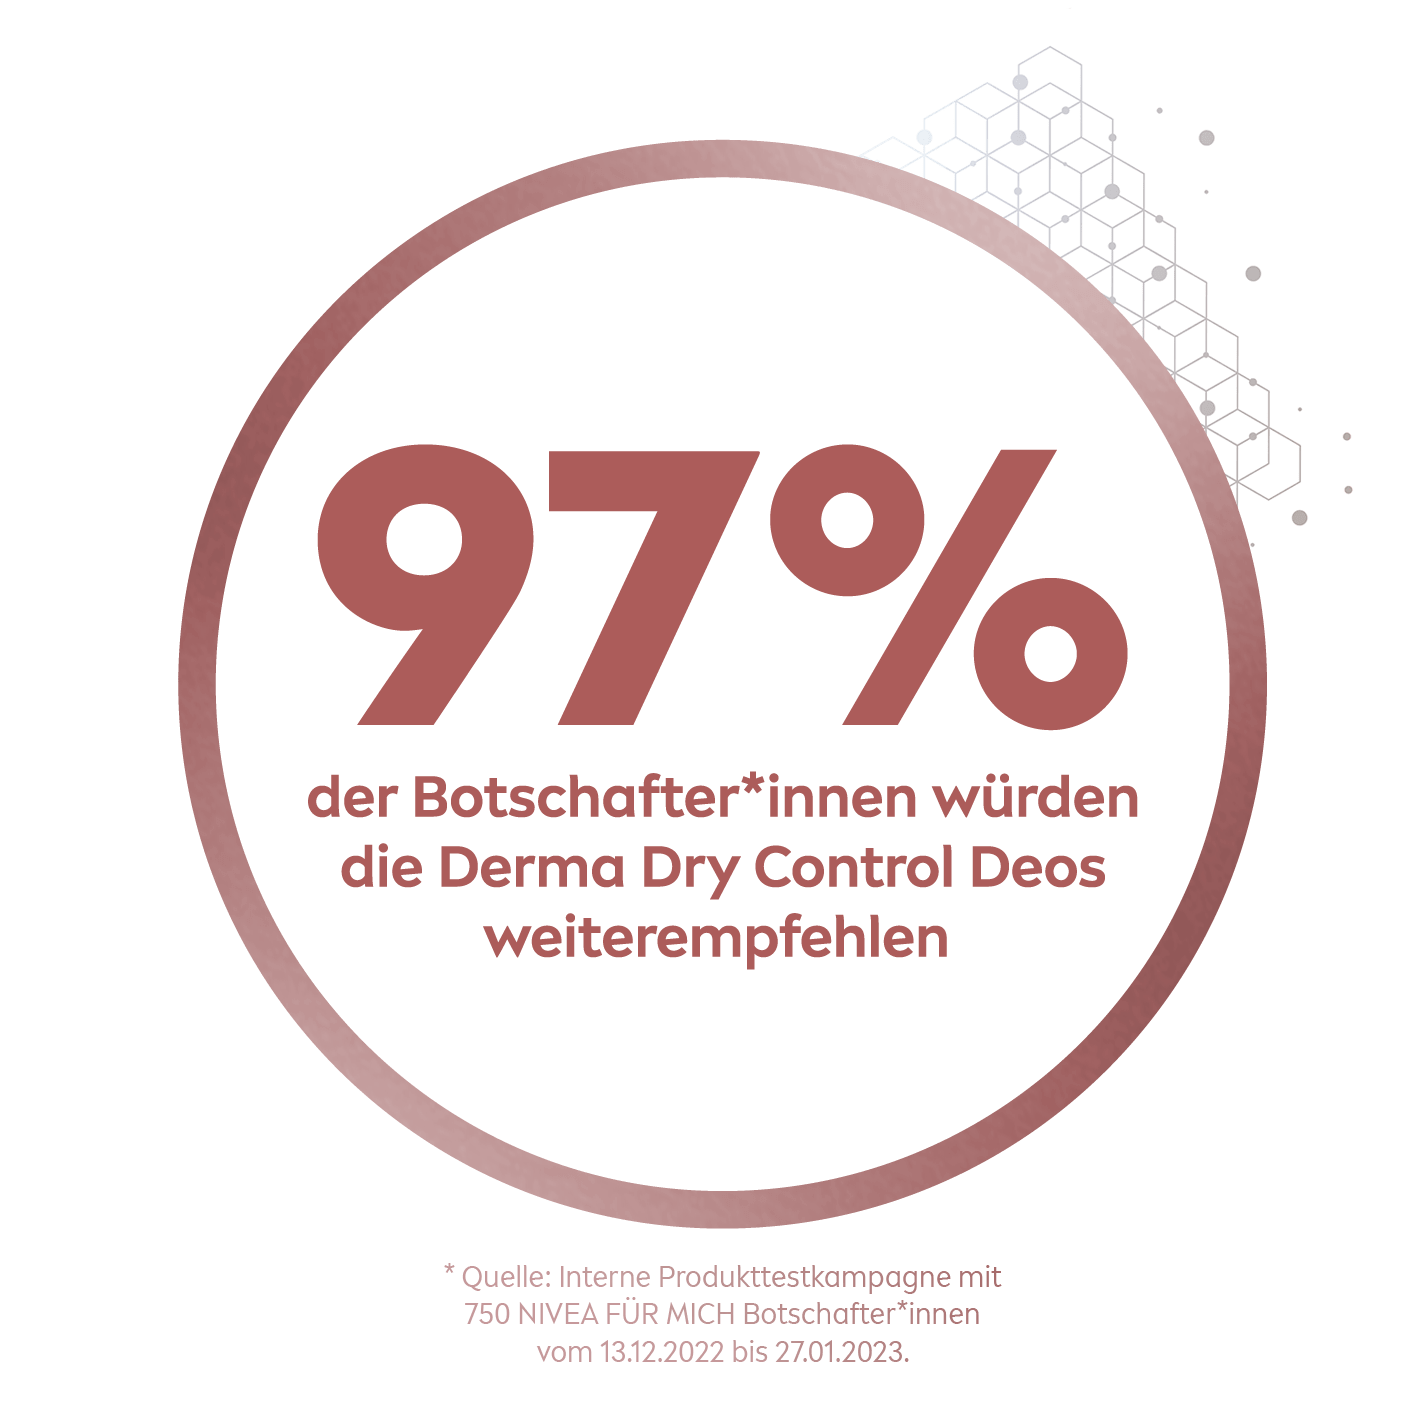 97% der Botschafter*innen würden die Derma Dry Control Deos weiterempfehlen